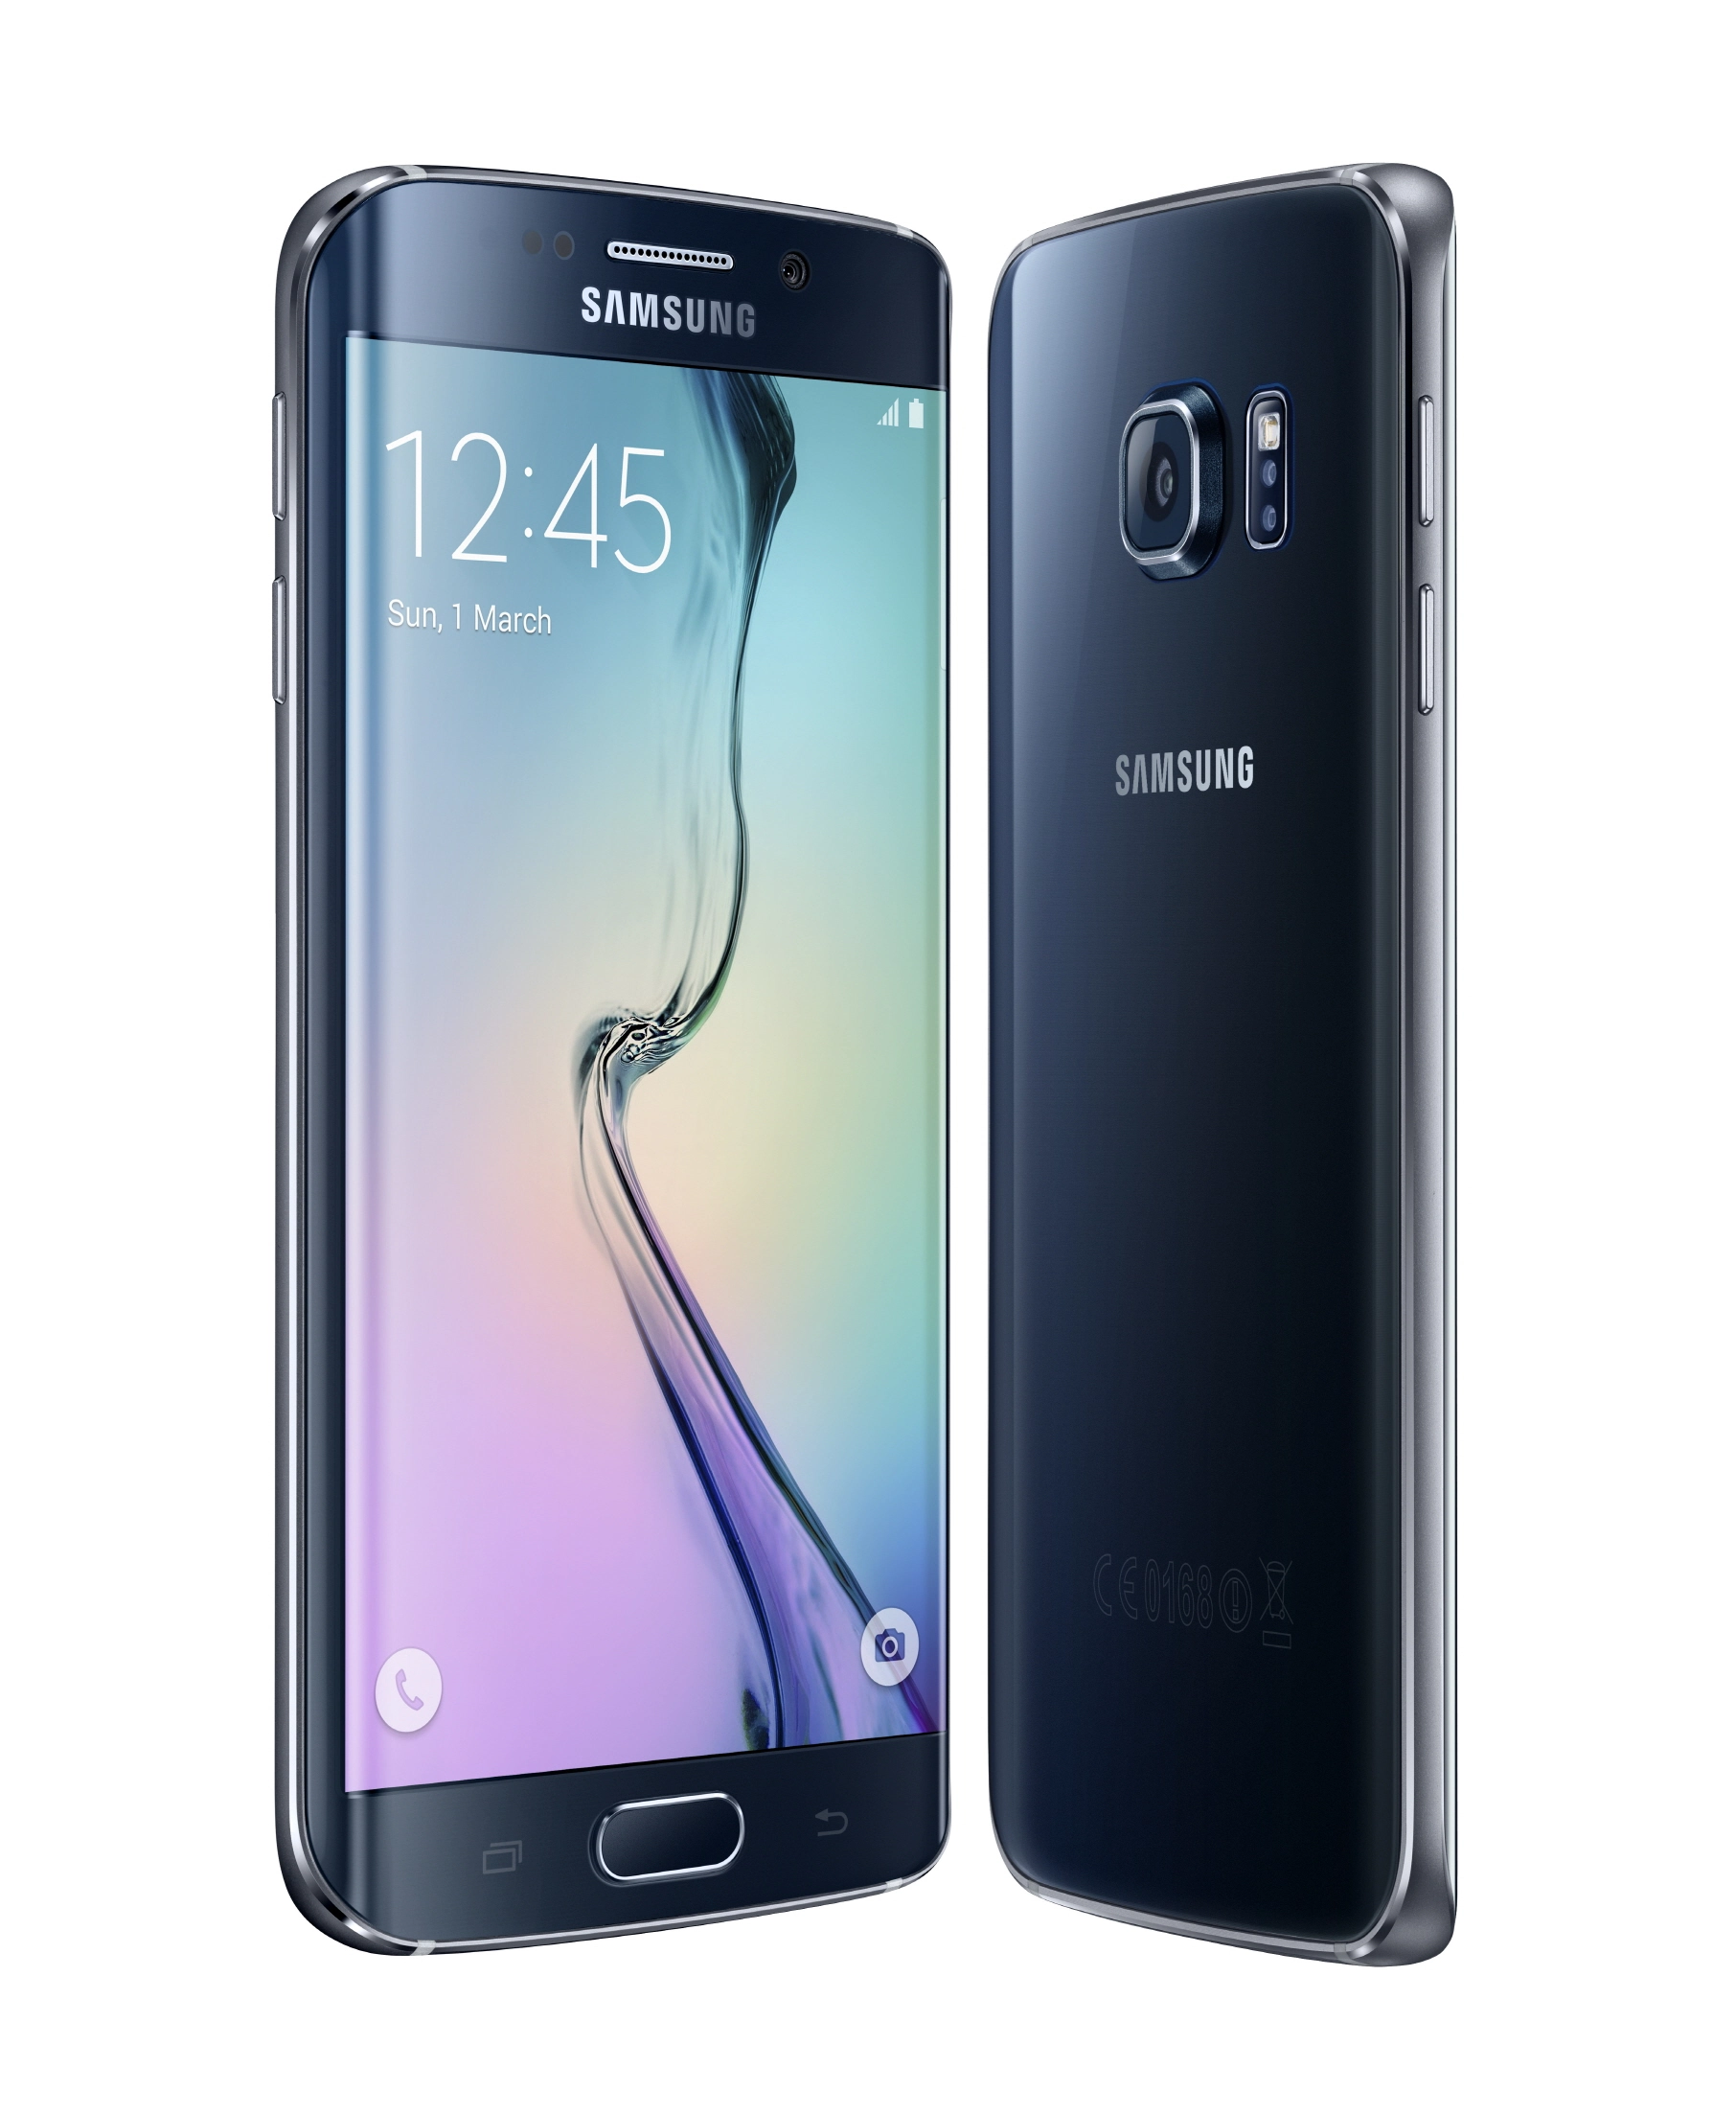 Paso Destello Limo Samsung Galaxy S6 edge: características, especificaciones y precios |  Geektopia